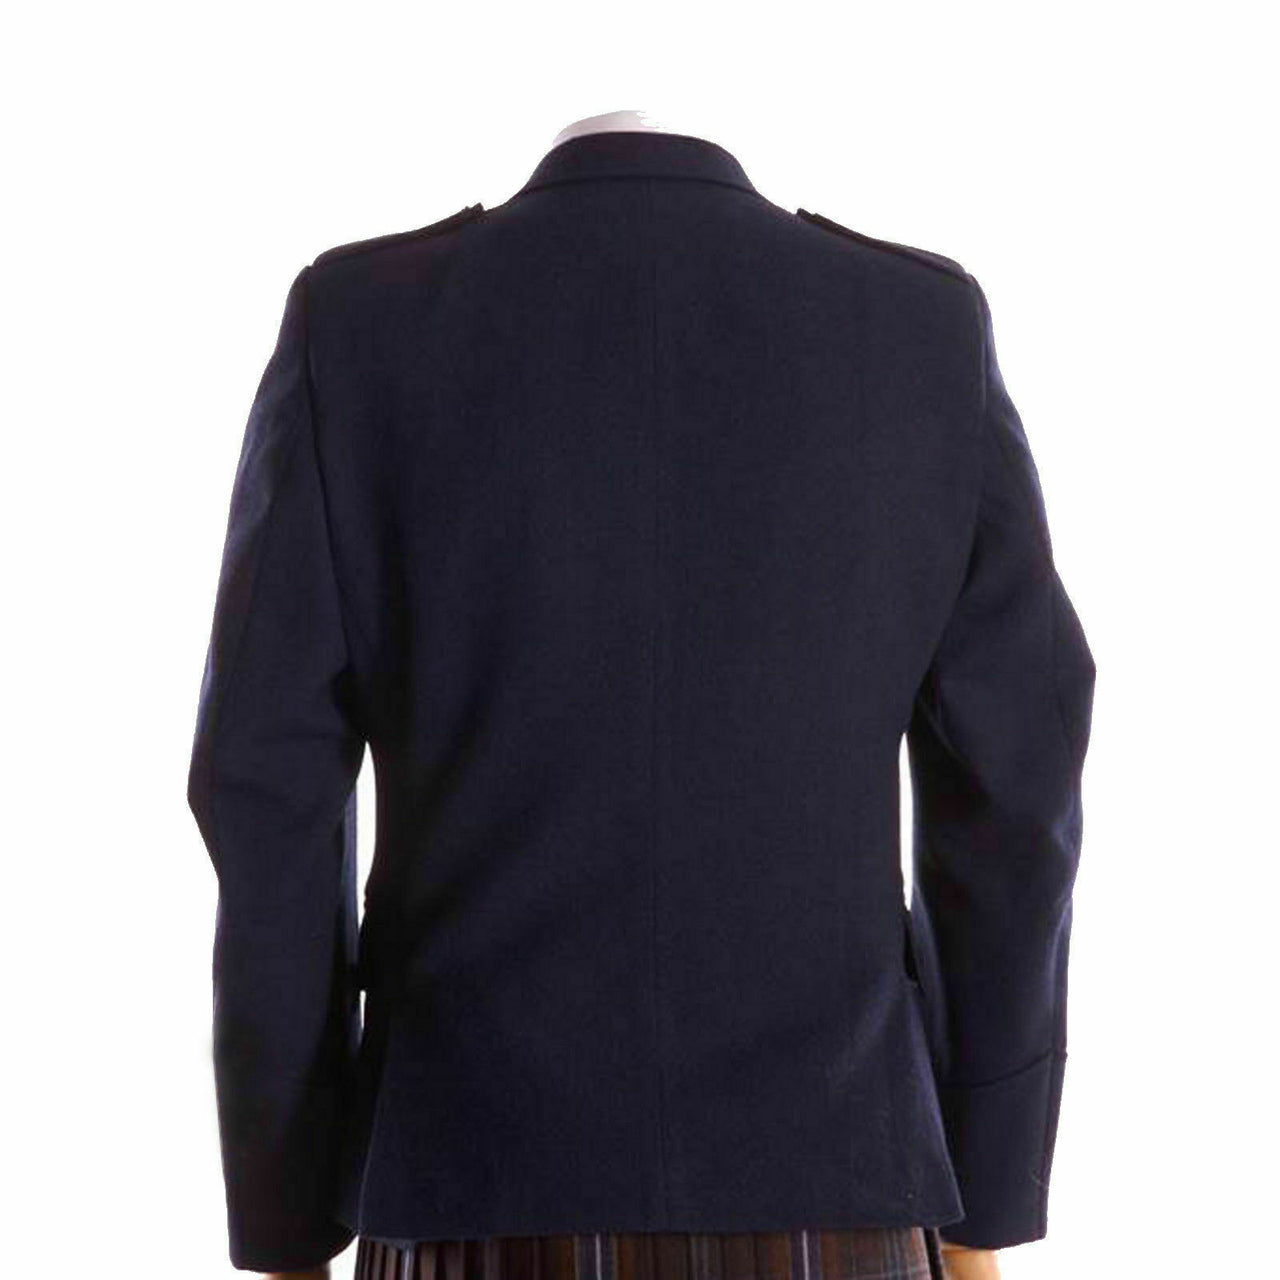 Navy Blue Wool Argyle kilt Jacket & Waistcoat/Vest, Scottish Argyle Jacket